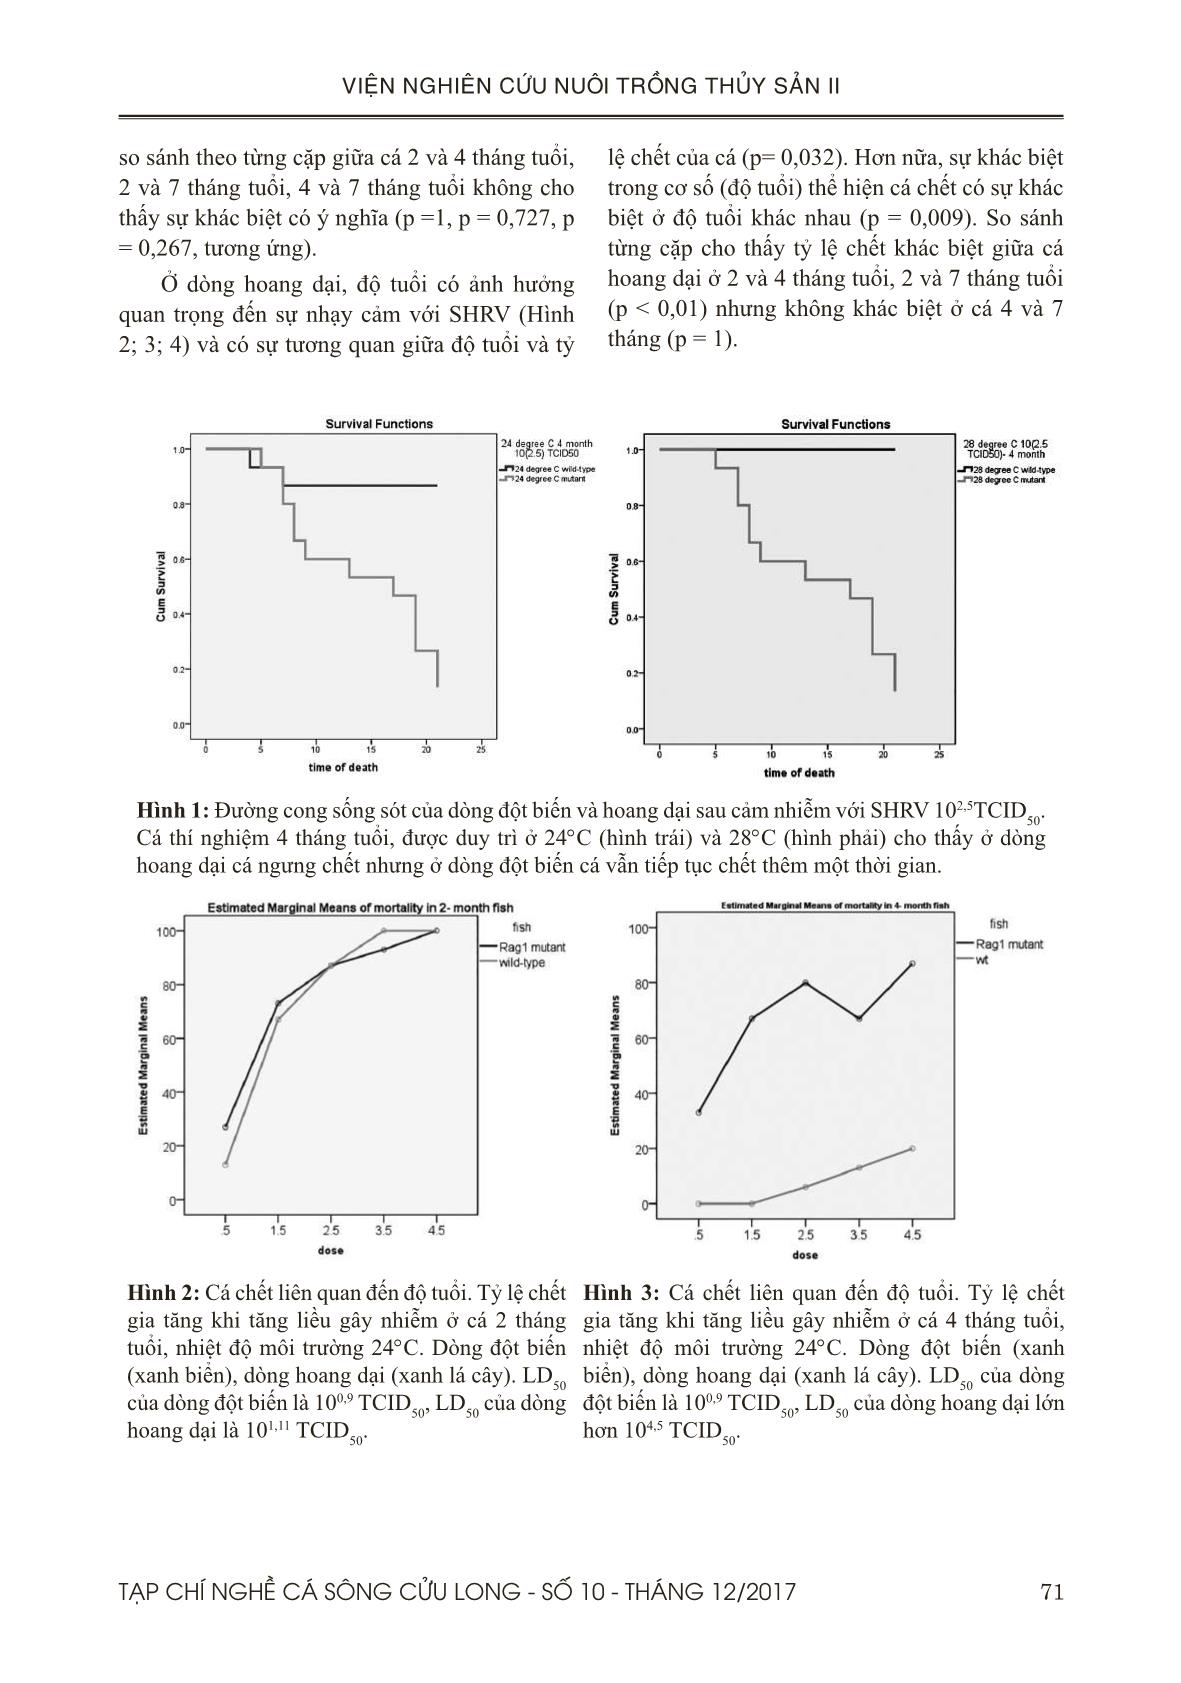 Khác biệt trong sự mẫn cảm với Novirhabdo virus của Zebrafish dòng hoang dại và đột biến và vai trò của lymphocytes trang 5